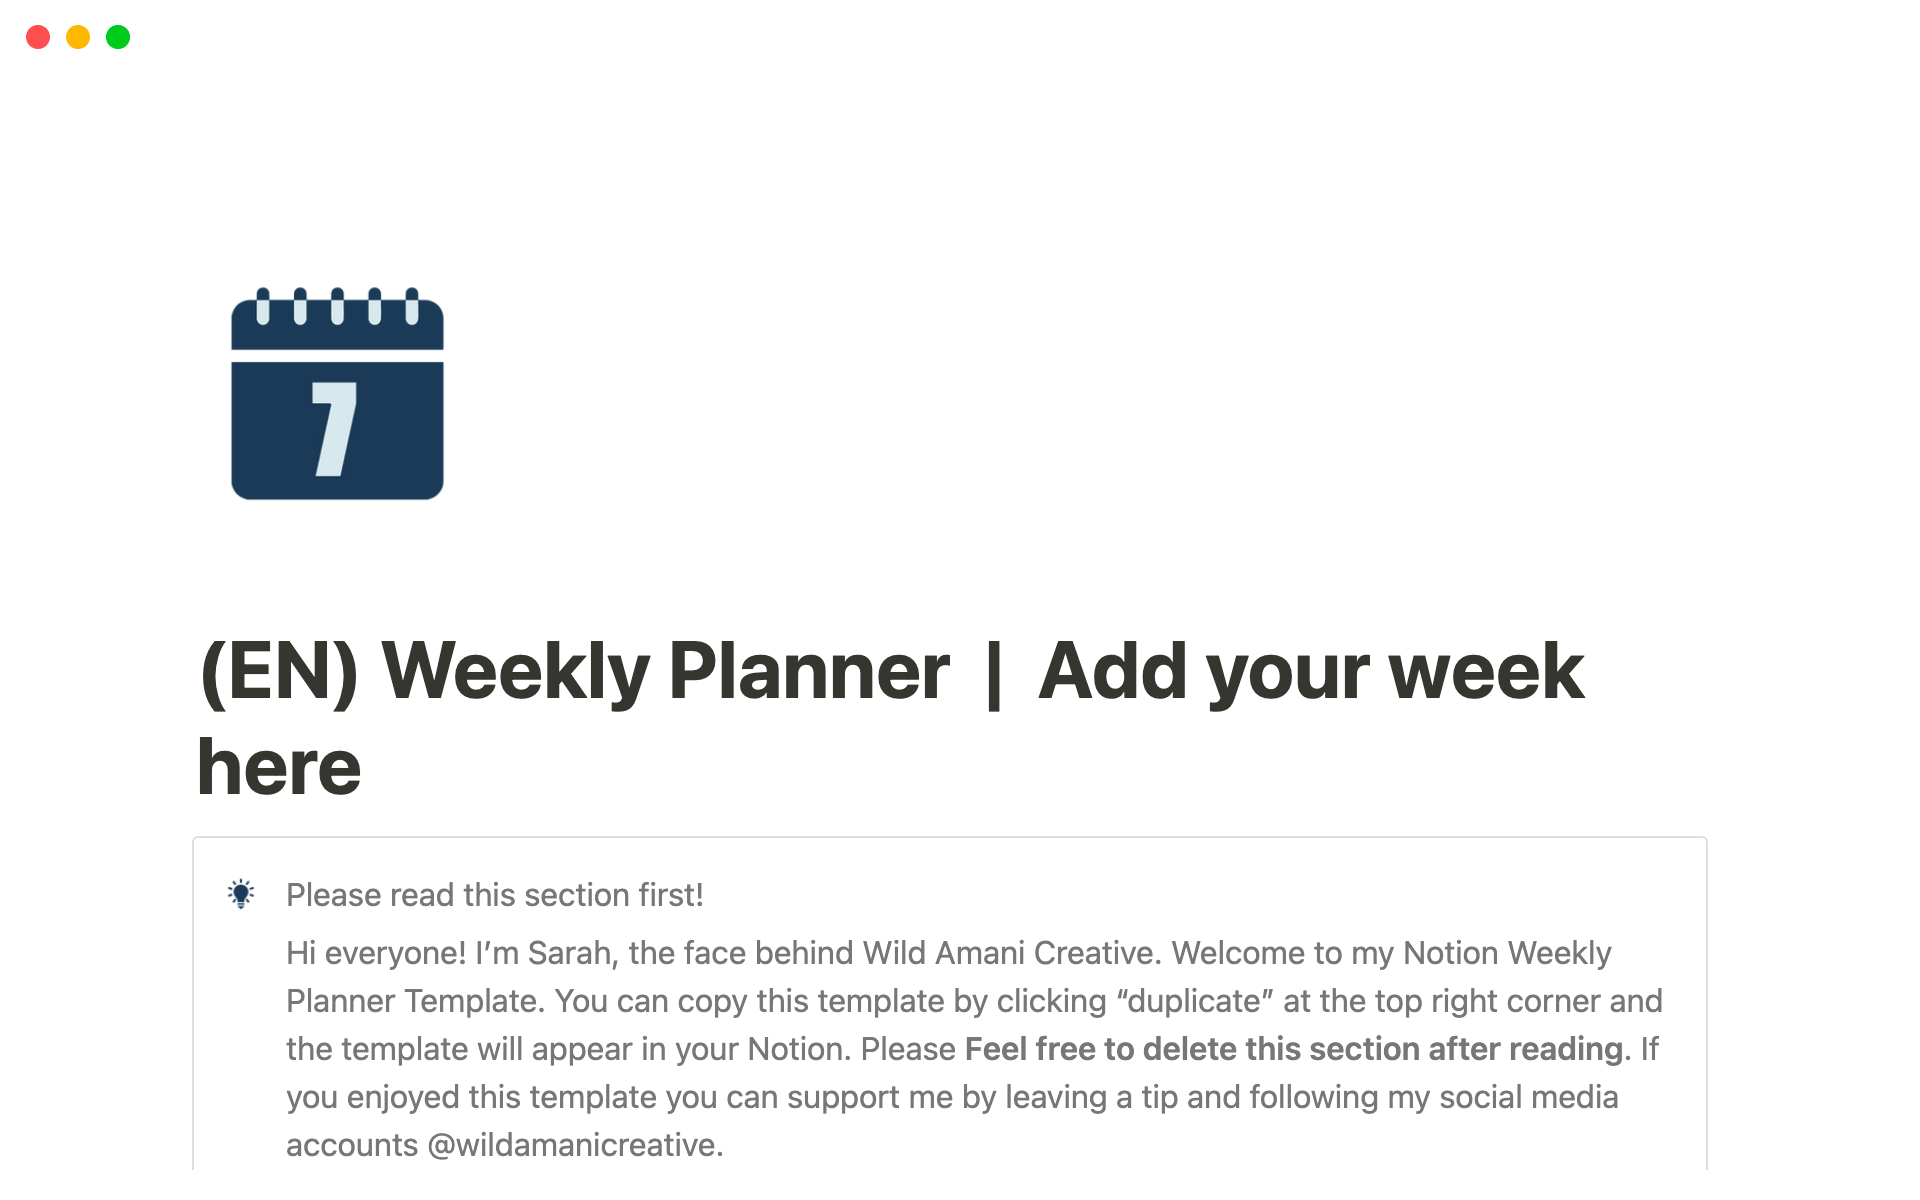 Uma prévia do modelo para Notion Weekly Planner